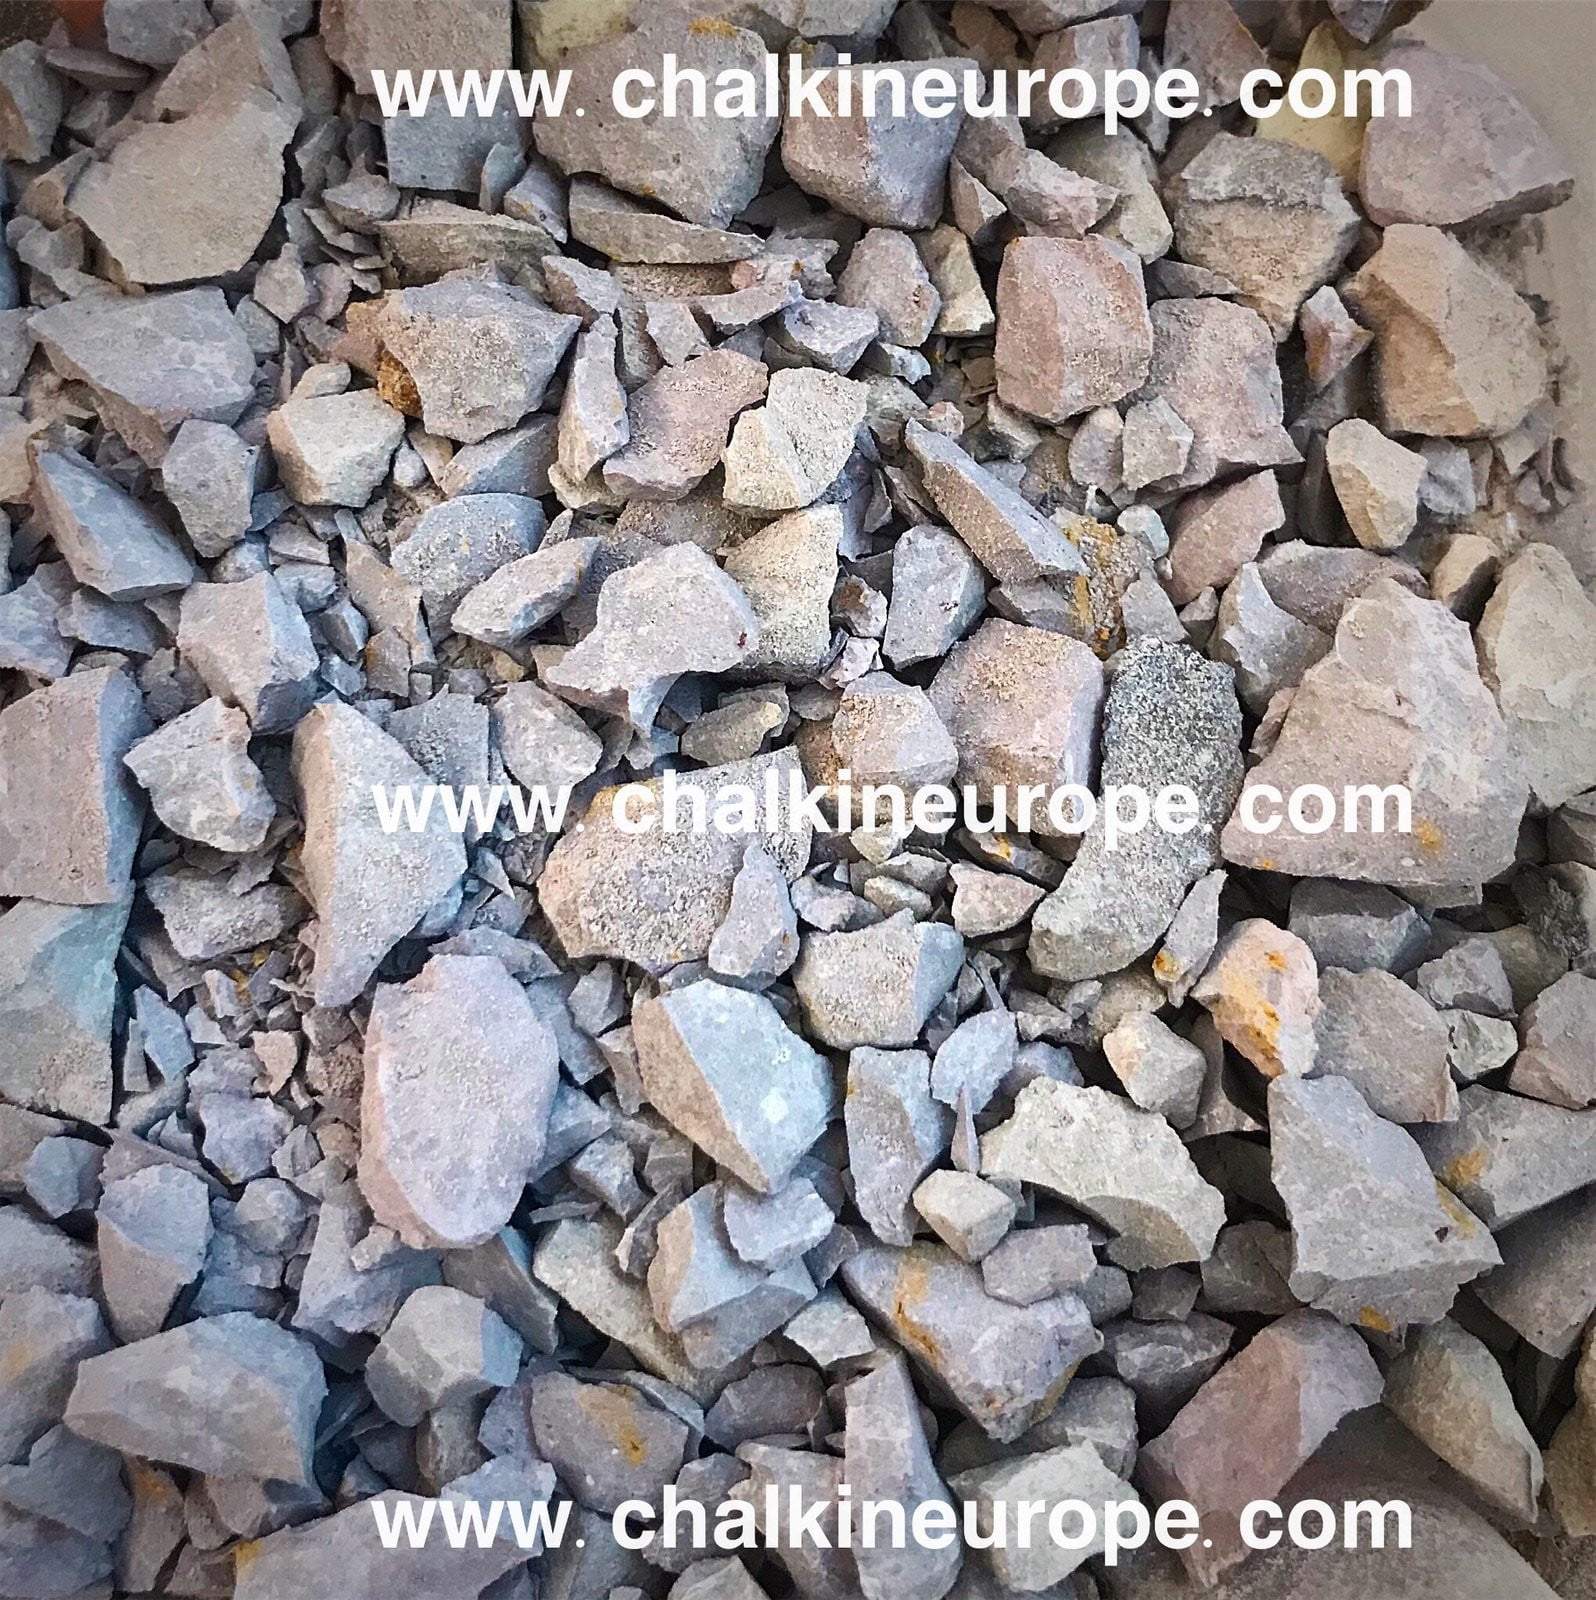 Пълно изпечени глинени хапки Nakumatt - Chalkineurope